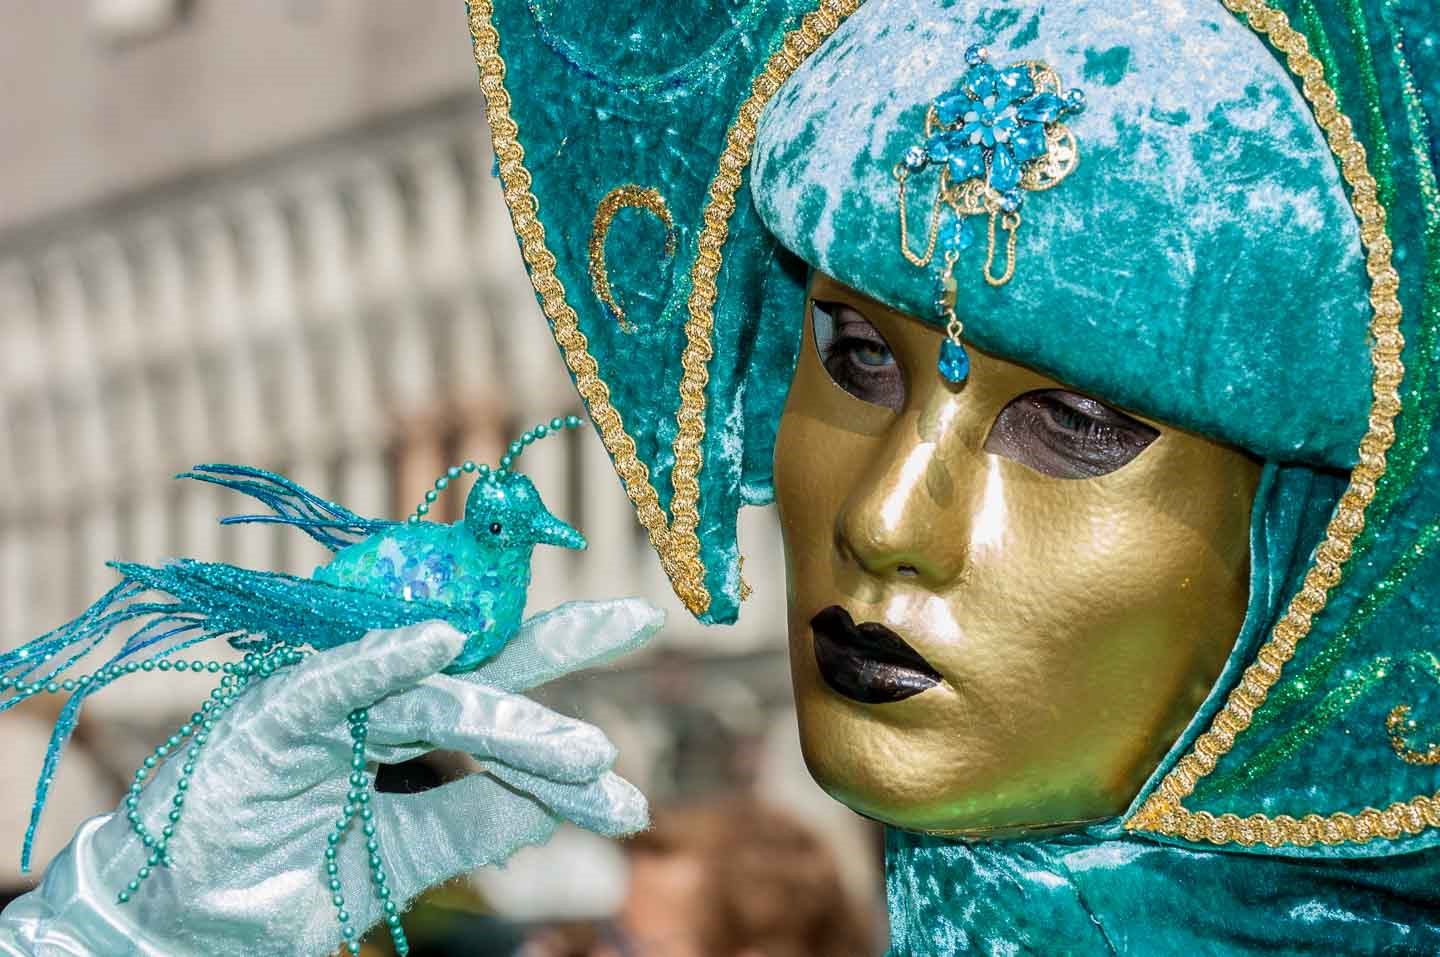 Venice - The libertine carnival